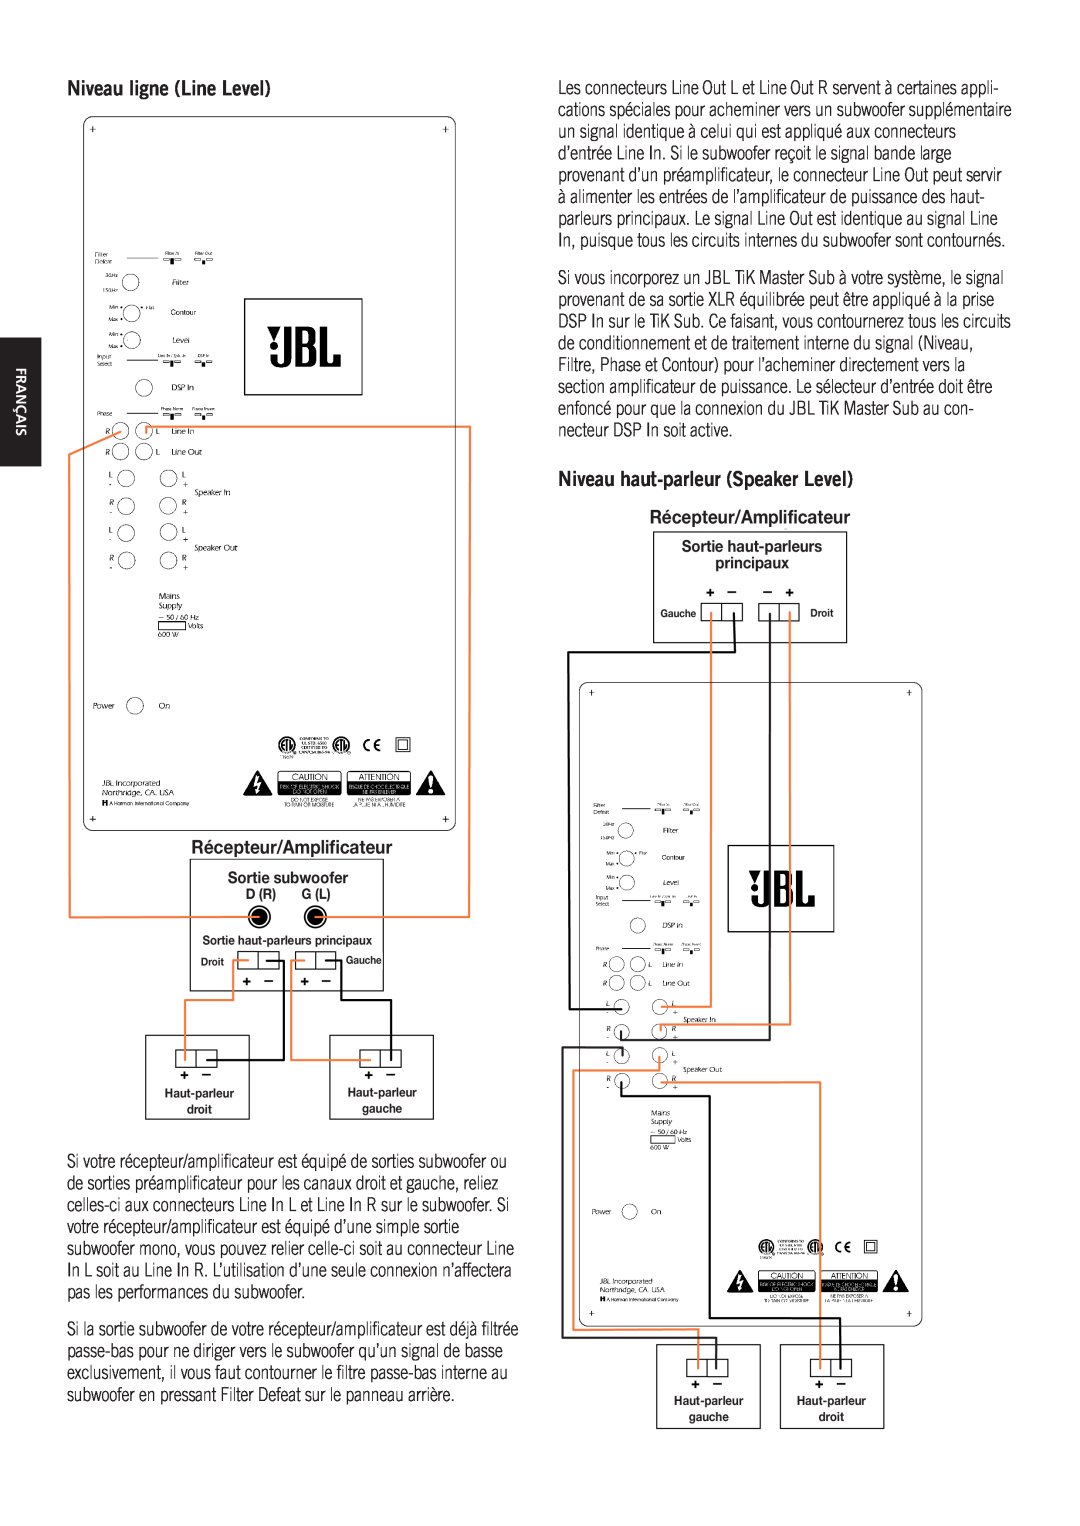 JBL TiK Sub owner manual Niveau ligne Line Level, Niveau haut-parleurSpeaker Level, Récepteur/Amplificateurceiver/Amplifier 